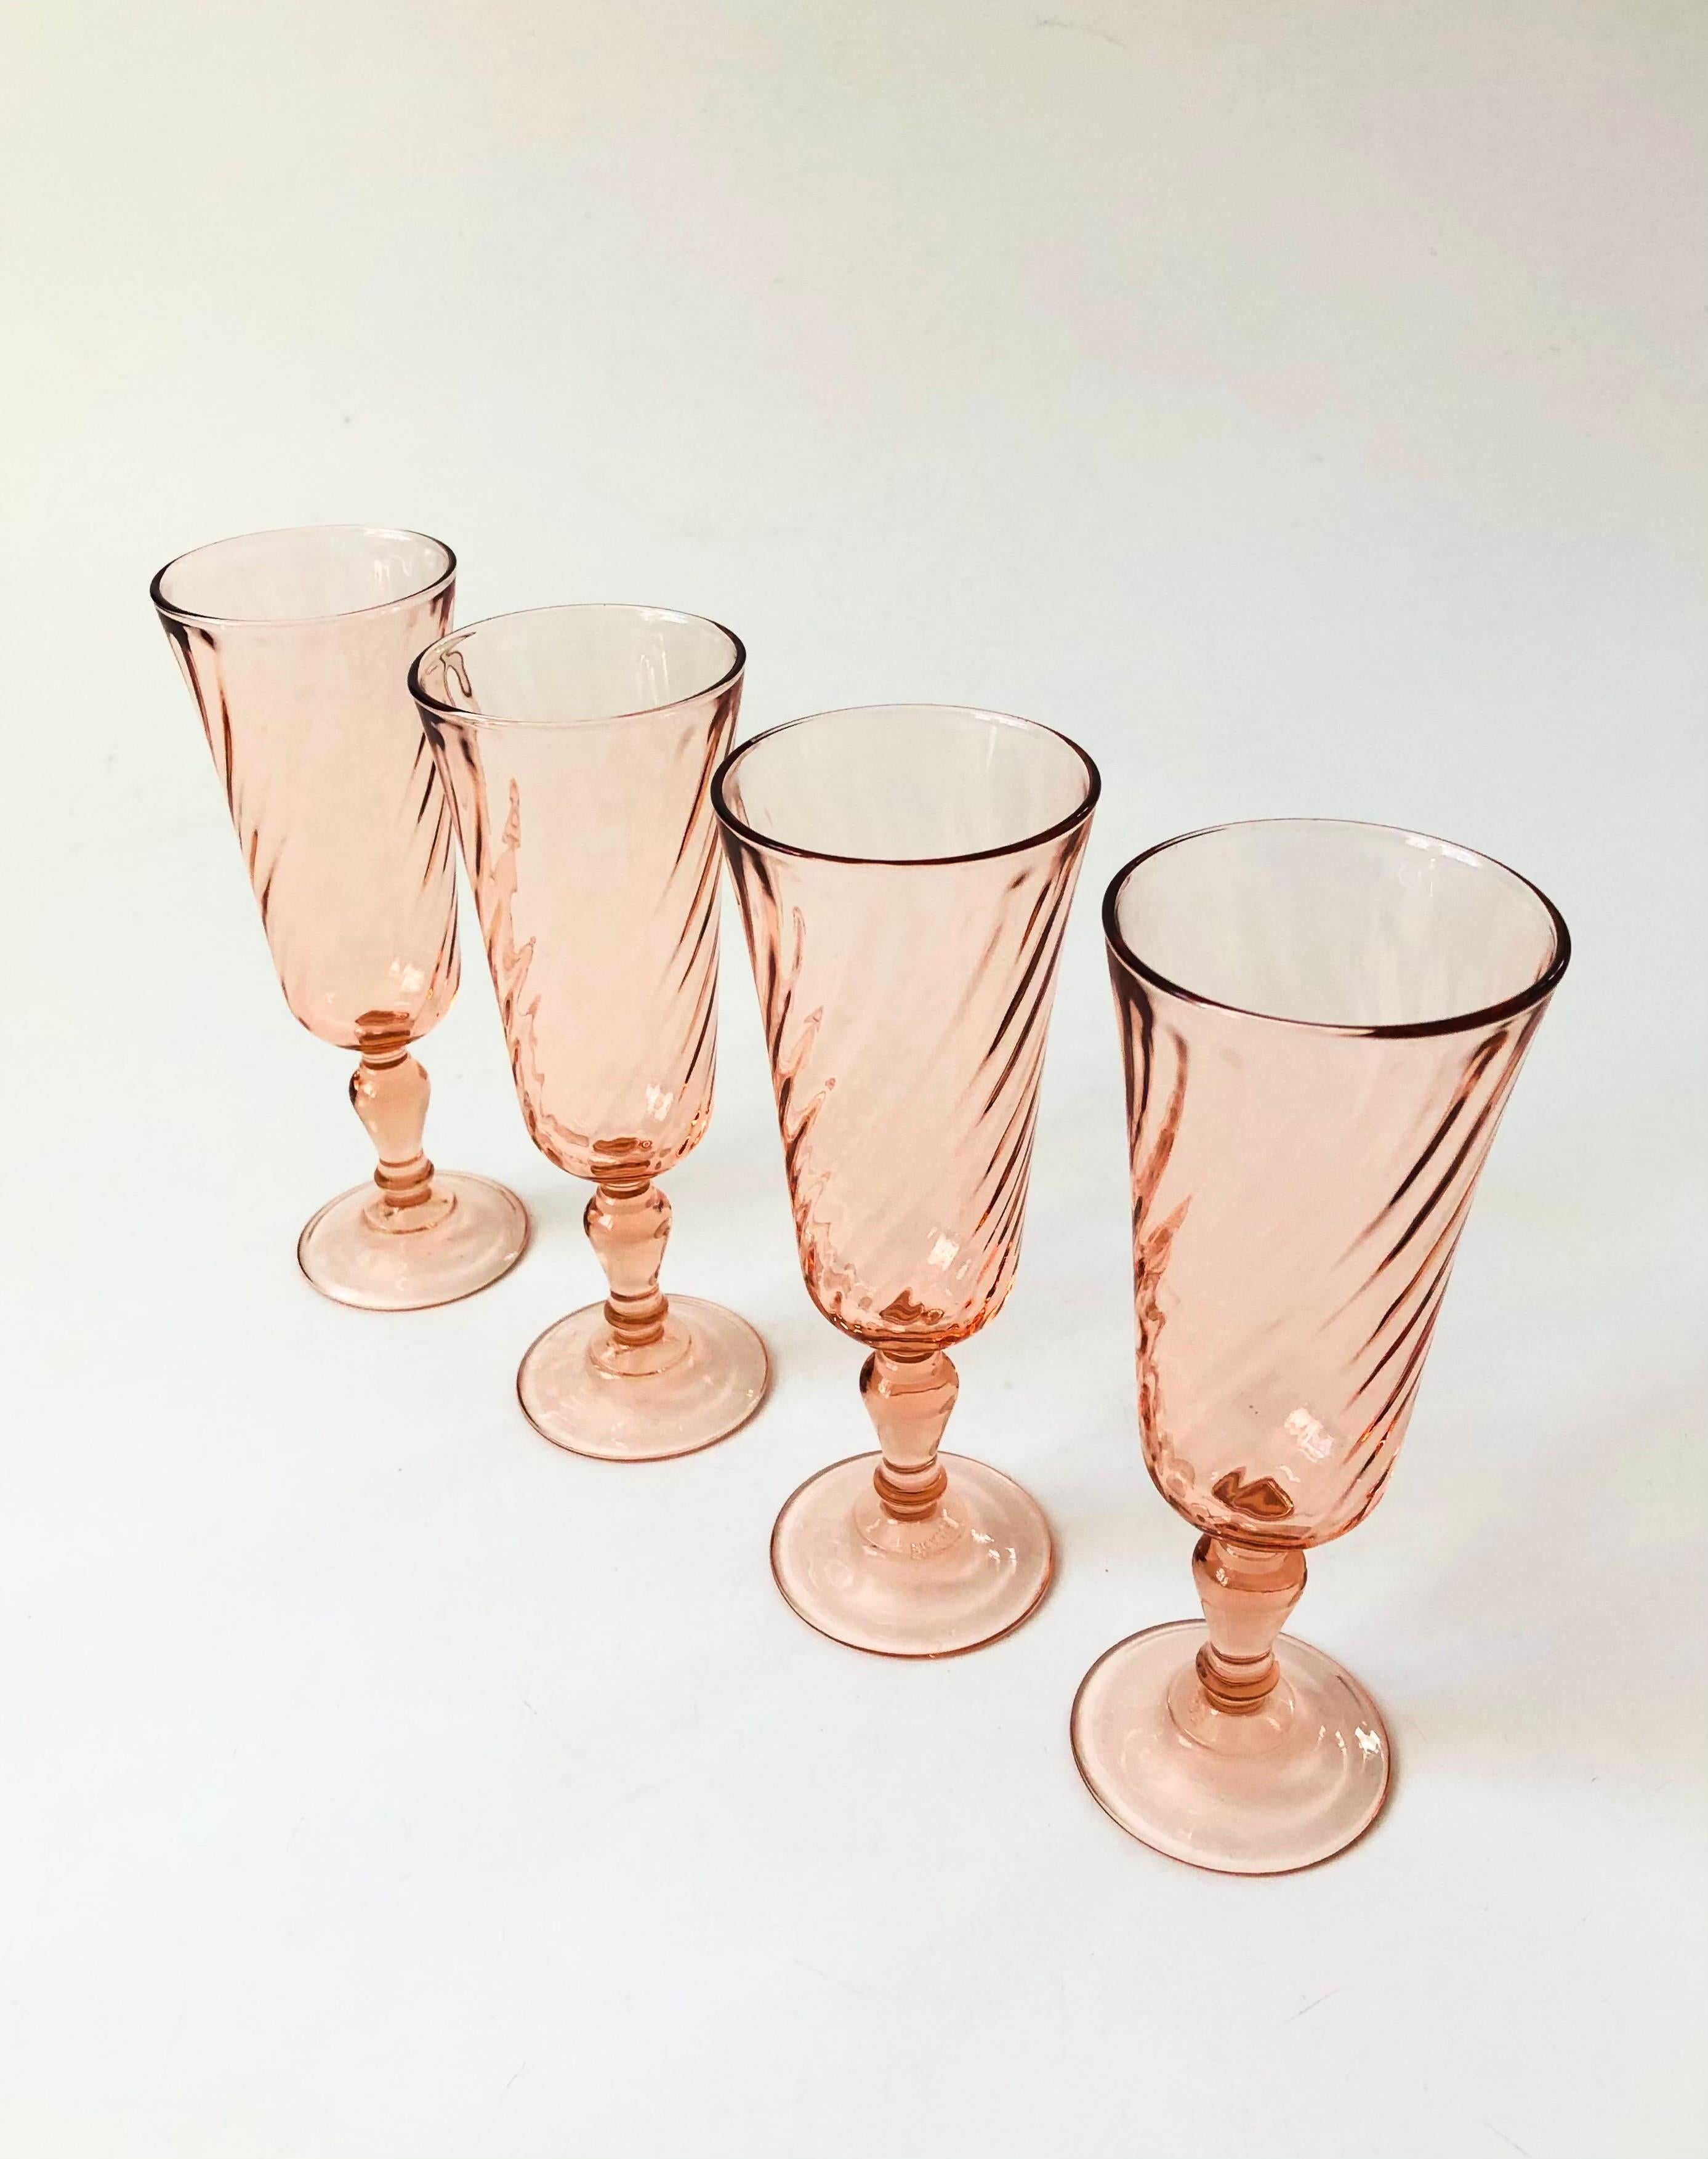 Un ensemble de 4 flûtes à champagne vintage dans une teinte rose blush pâle. Chaque verre est orné d'un joli motif en forme de tourbillon. Fabriqué en France par Arcoroc.

